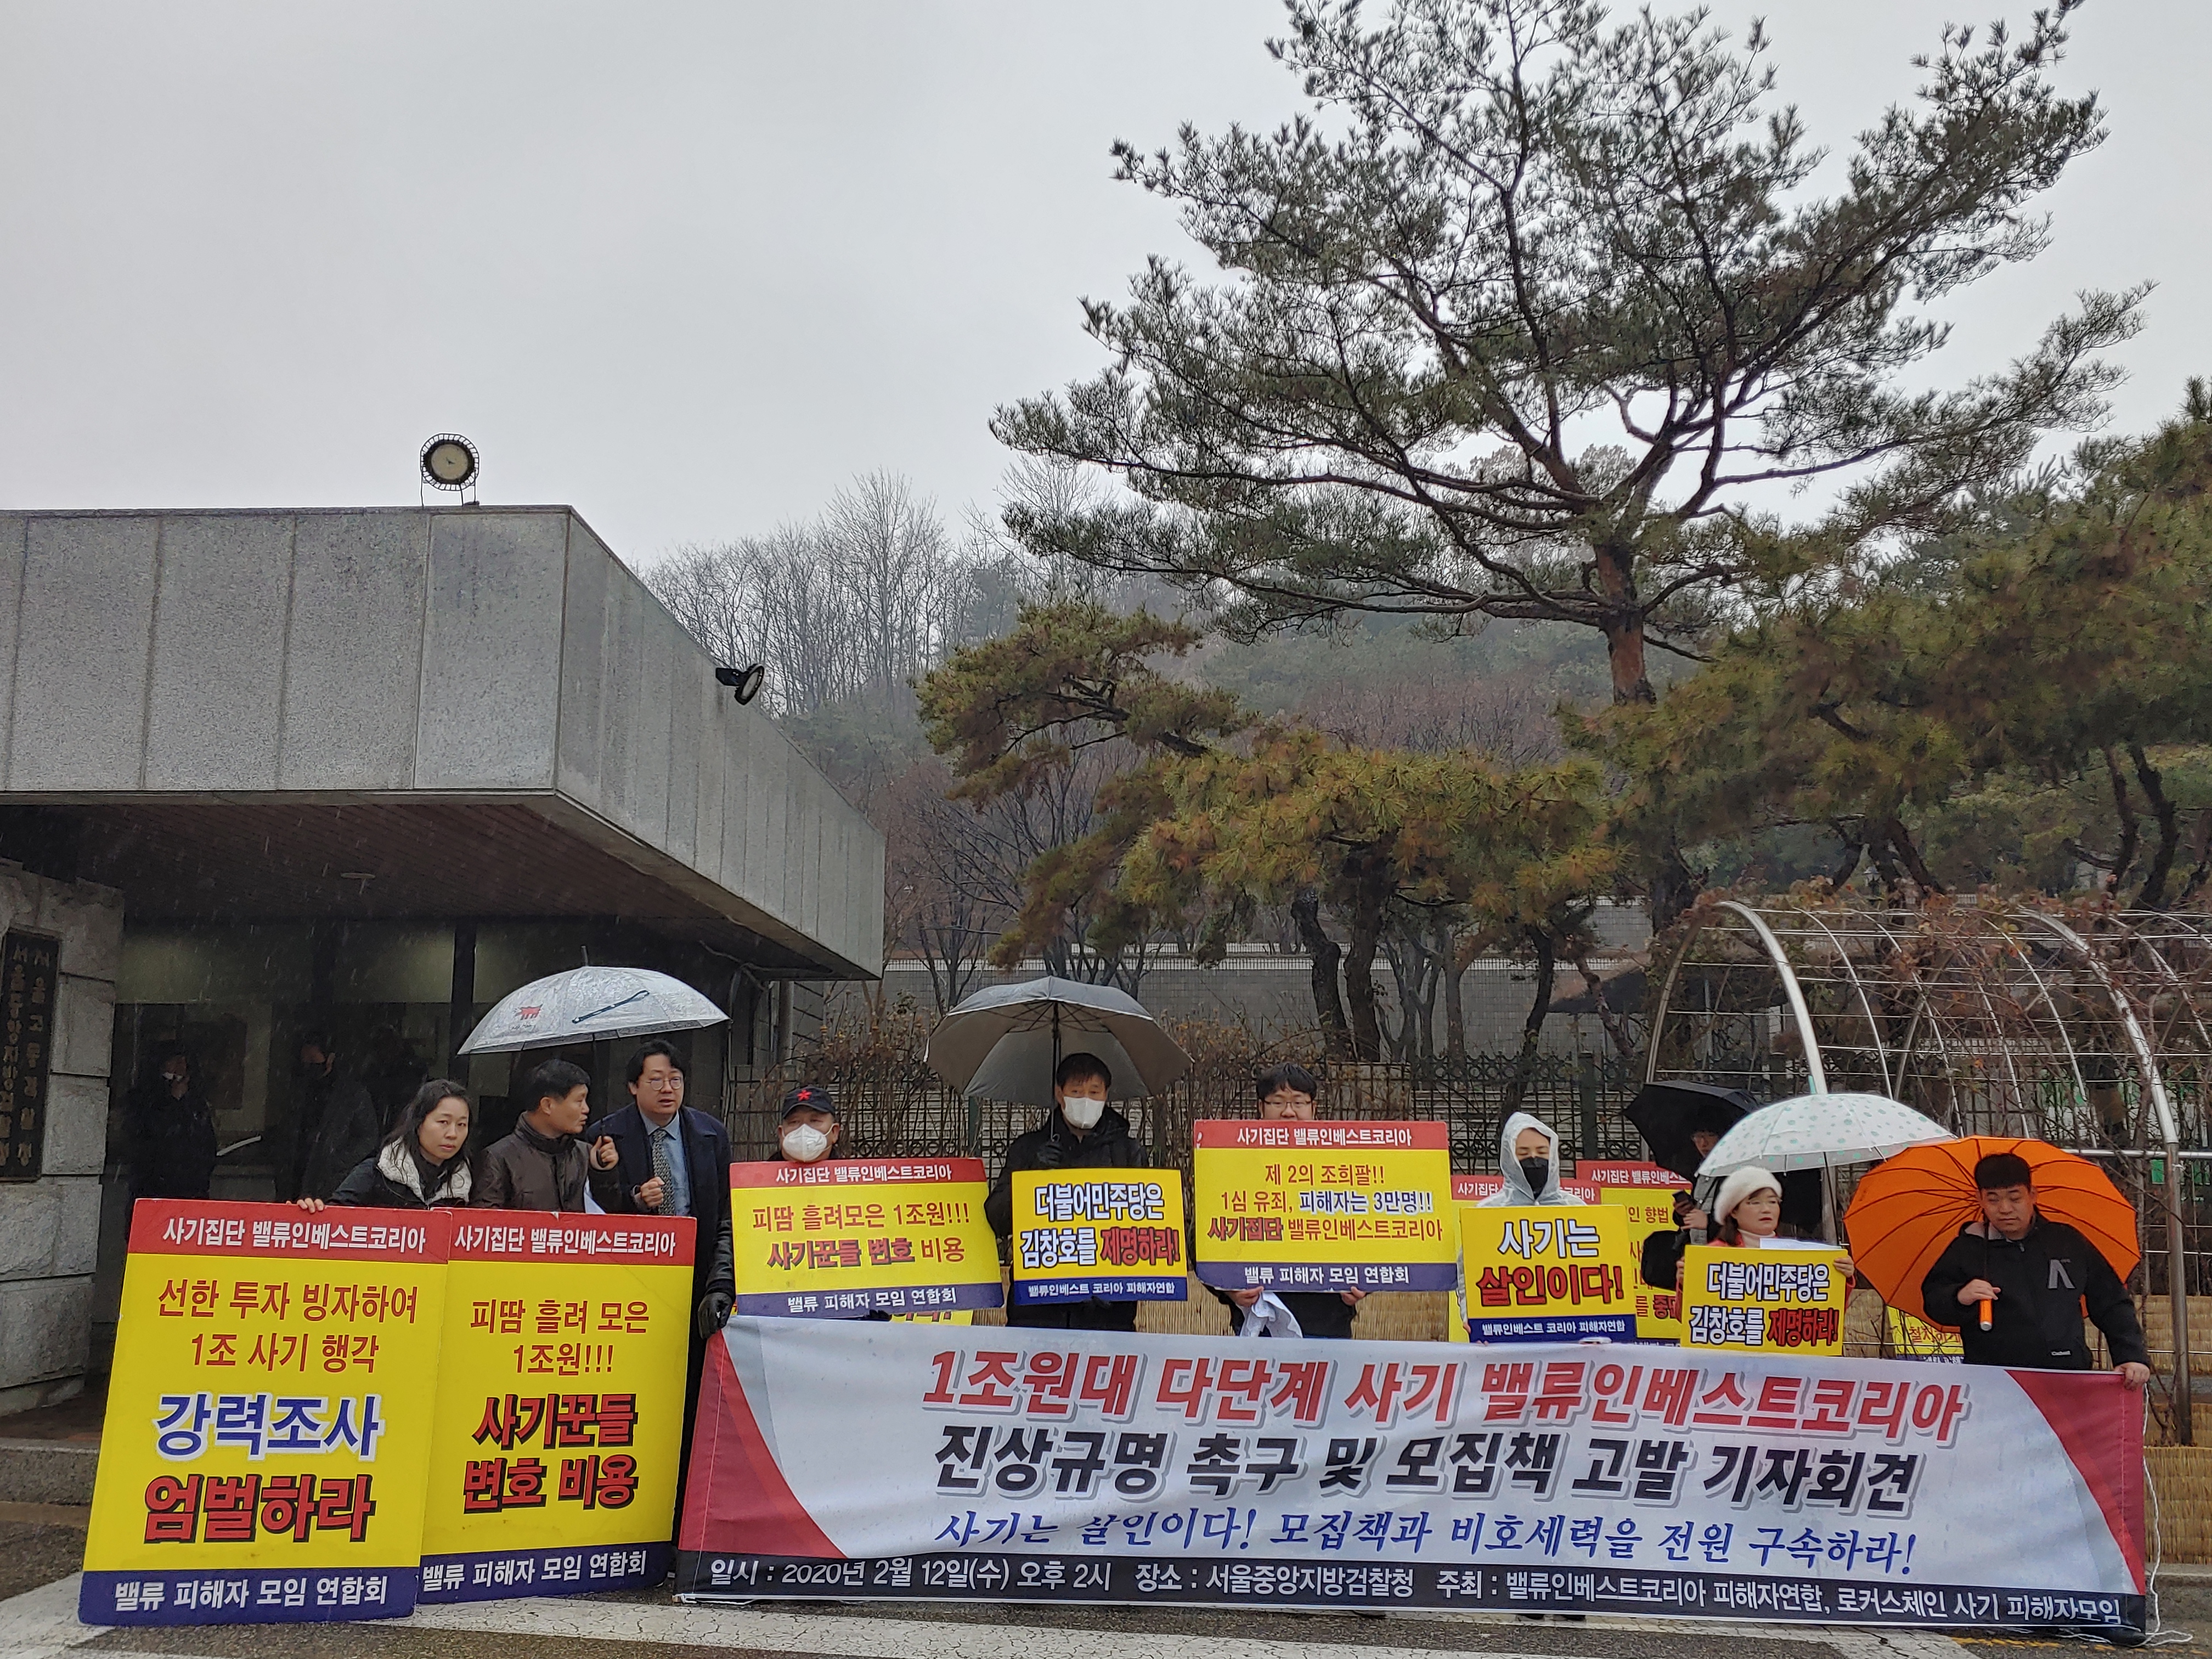 밸류인베스트코리아(VIK) 피해자연합이 12일 서초동 서울중앙지검 앞에서 기자회견을 열고 VIK 모집책과 비호세력 구속을 주장하고 있다. VIK 피해자연합 제공